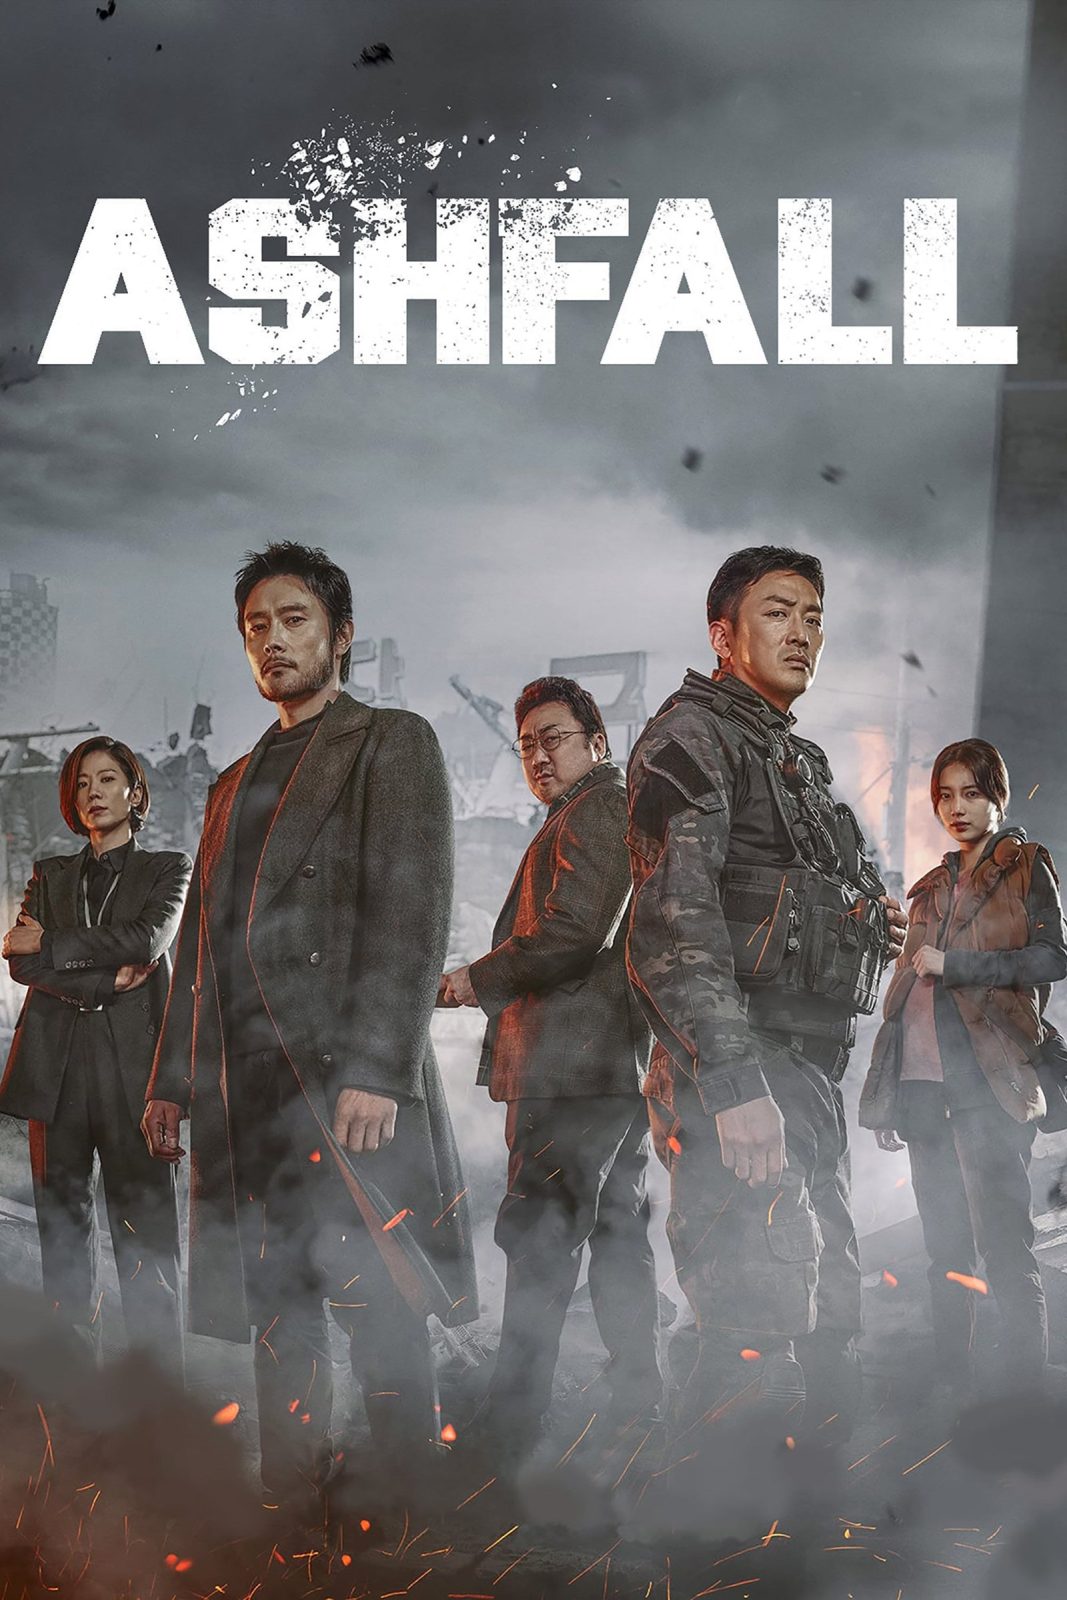 دانلود فیلم Ashfall 2019